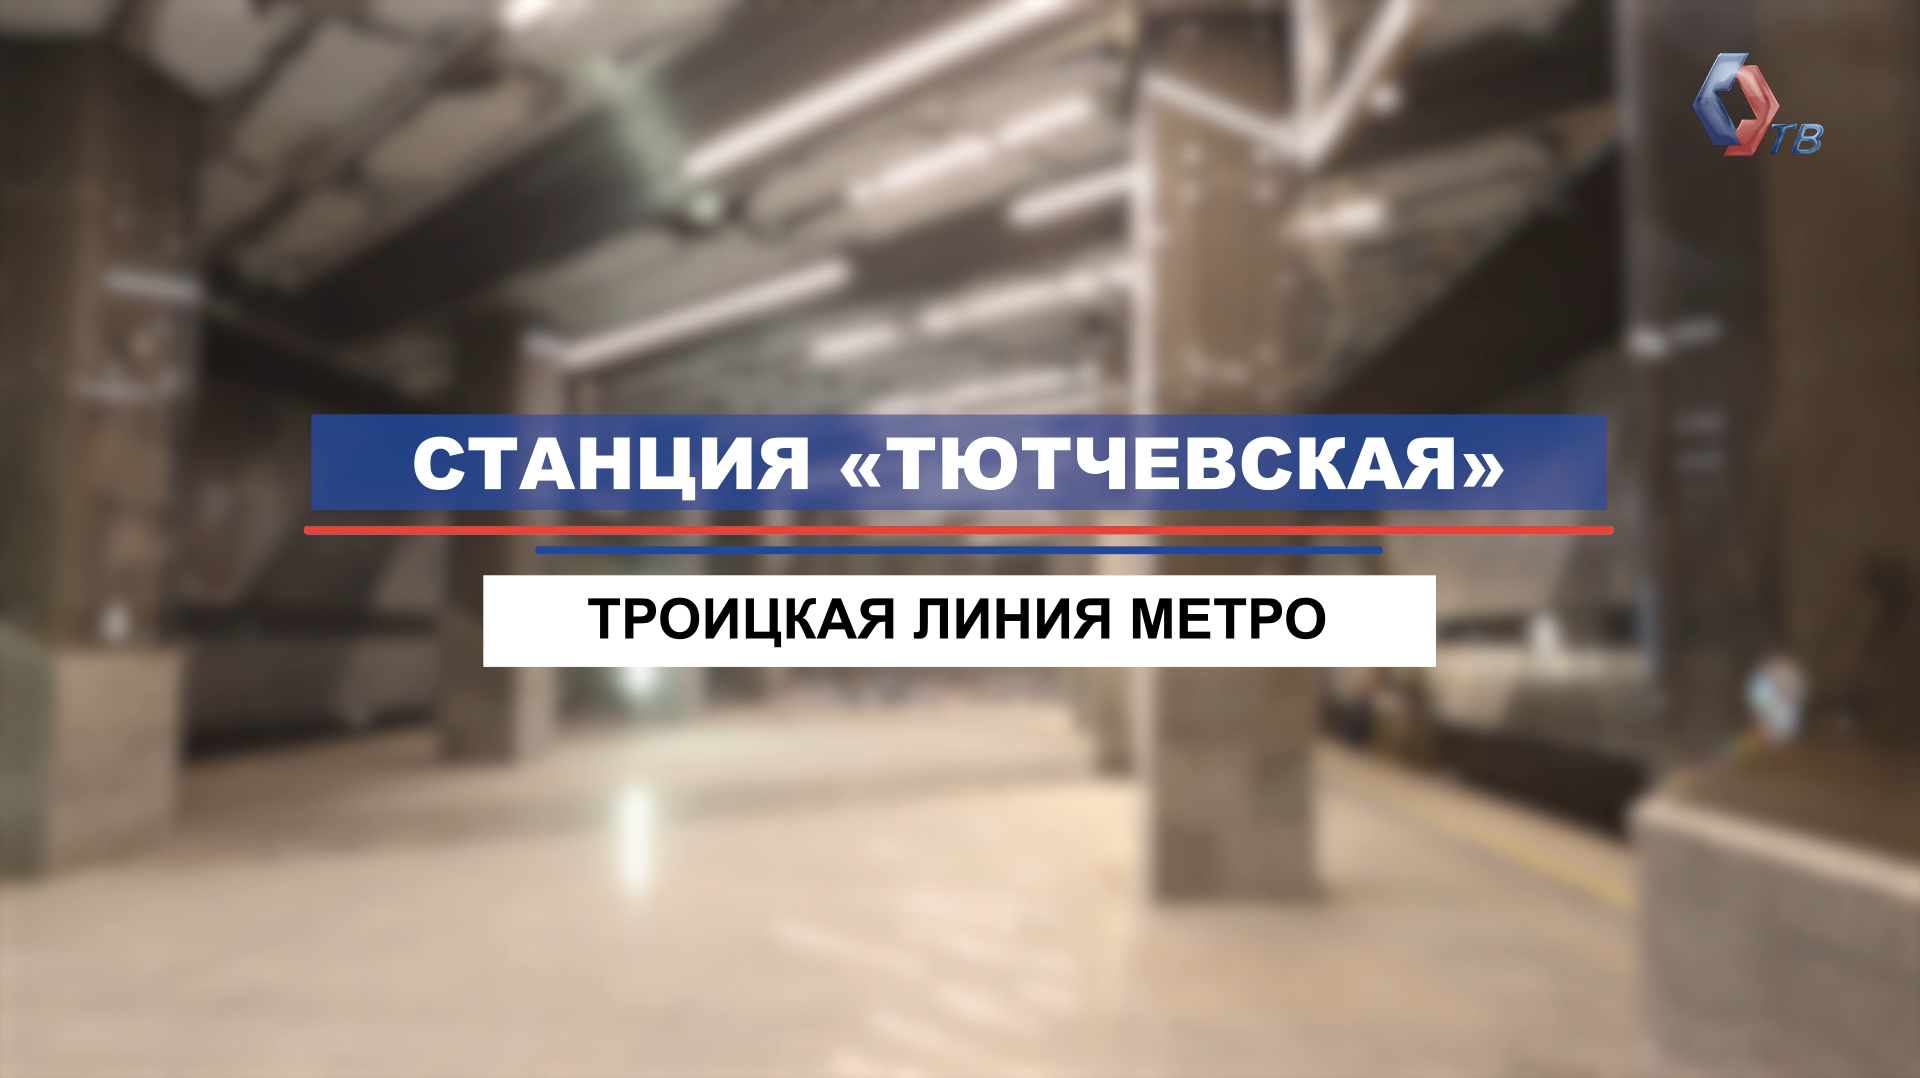 На станции «Тютчевская» Троицкой линии метро завершается отделка пассажирской зоны